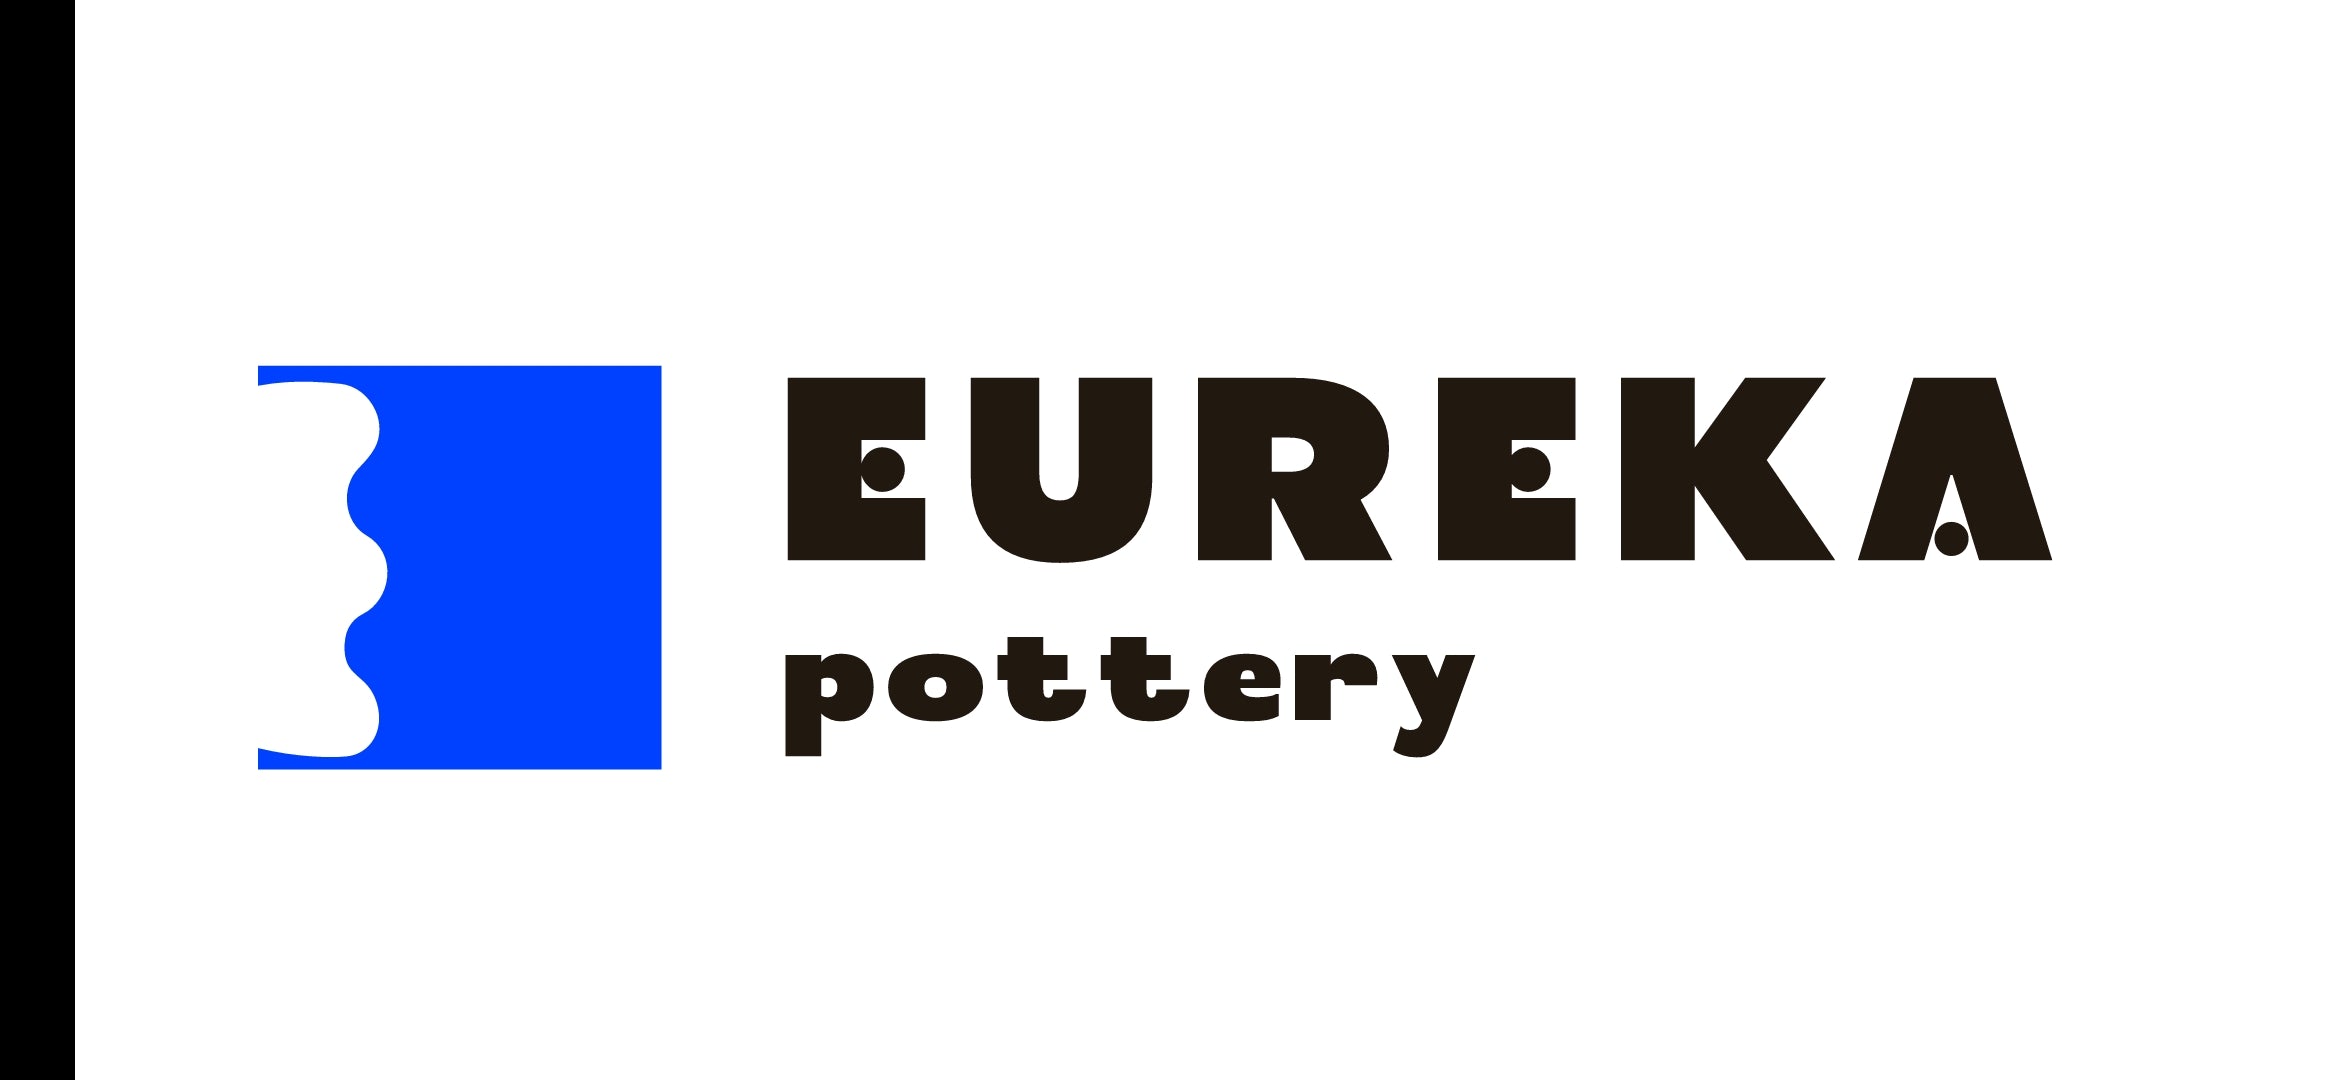 eureka pottery